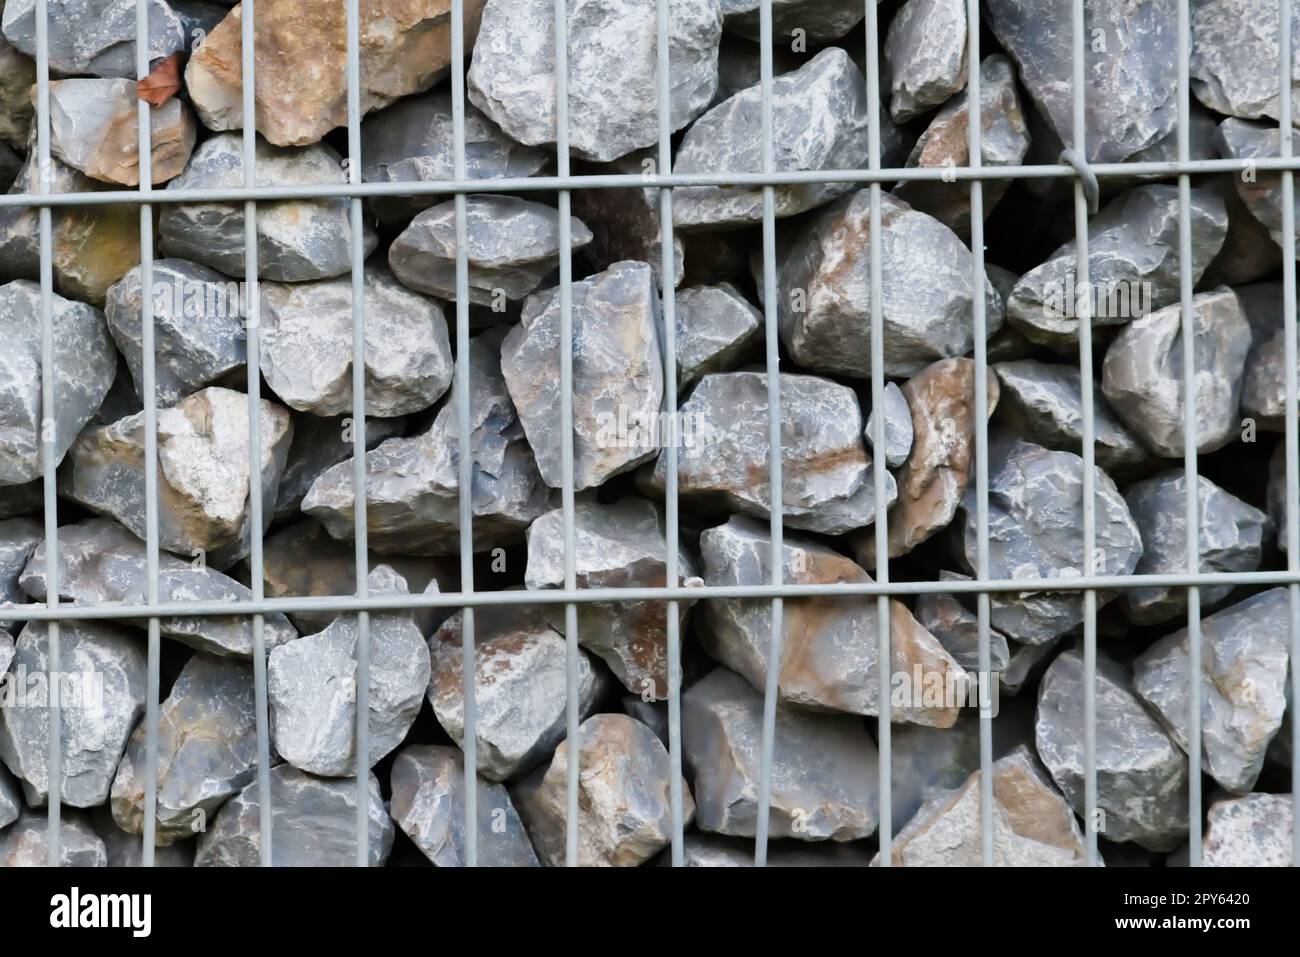 Il bordo delle rocce grezze e le pareti in pietra grigia fanno da sfondo a pietre naturali con materiale frantumato e grezzo impilato nella griglia metallica come massiccio bordo in colori grigi come sfondo minerale naturale per i giardini Foto Stock